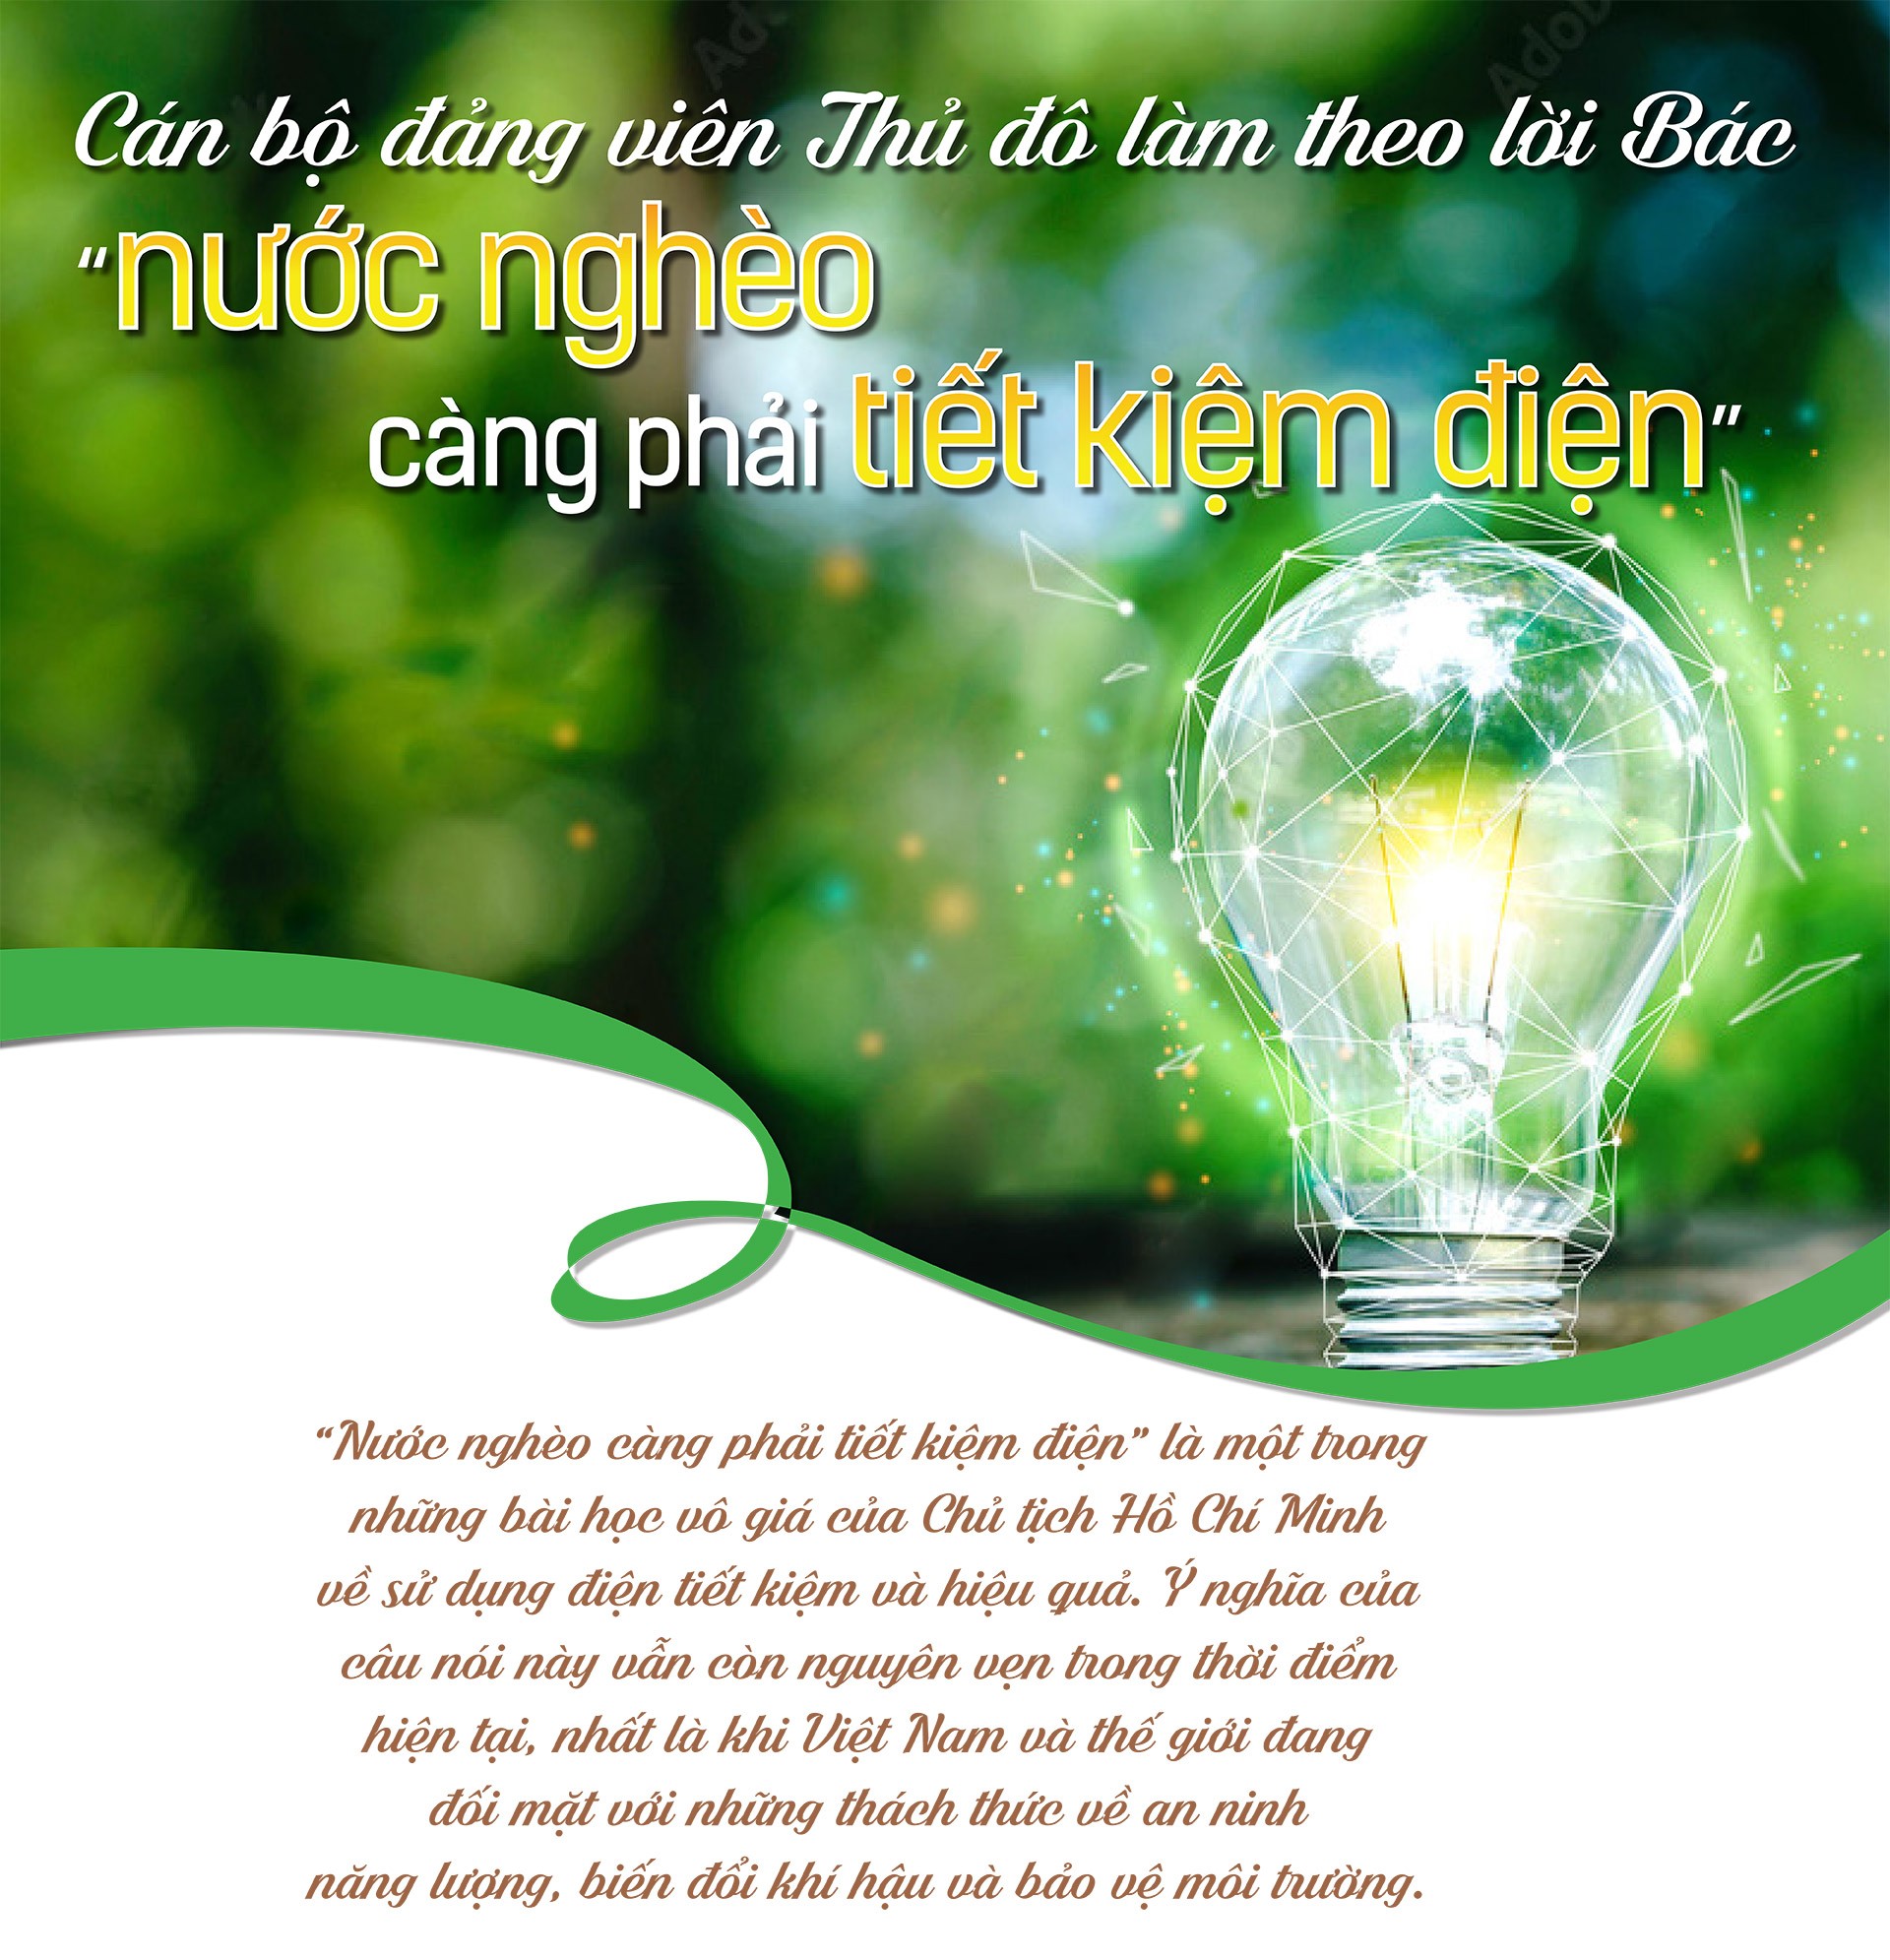 Longform | Cán bộ đảng viên Thủ đô Hà Nội làm theo lời Bác “Nước nghèo càng phải tiết kiệm điện”